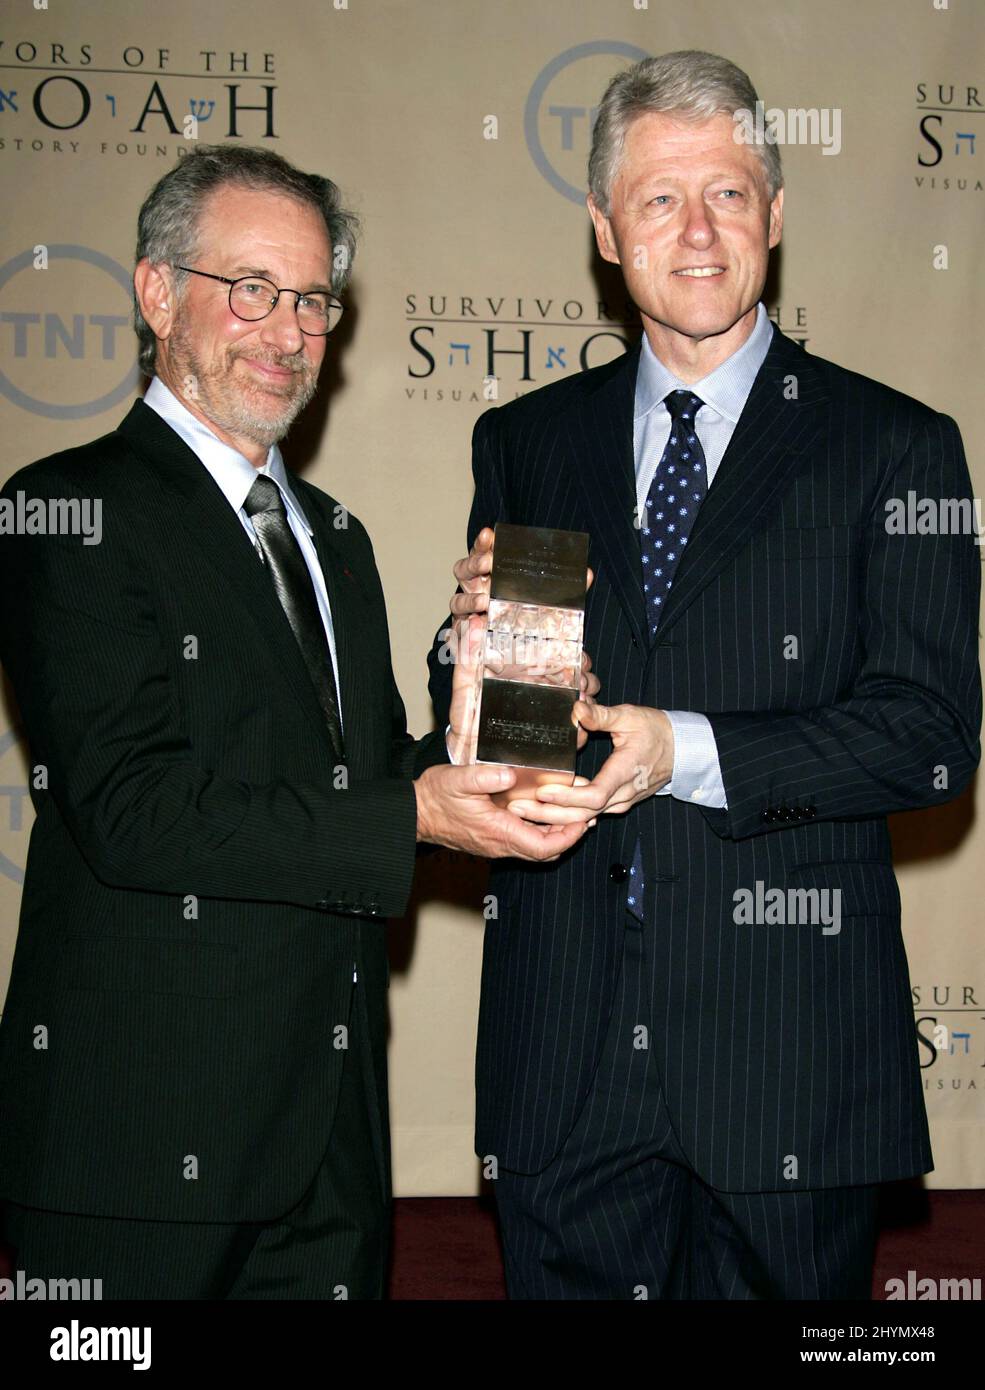 L'ex presidente William Jefferson Clinton ha onorato la cena annuale degli Ambasciatori per l'Umanità 5th, con la partecipazione di Tom Cruise & Steven Spielberg. Foto: UK Stampa Foto Stock